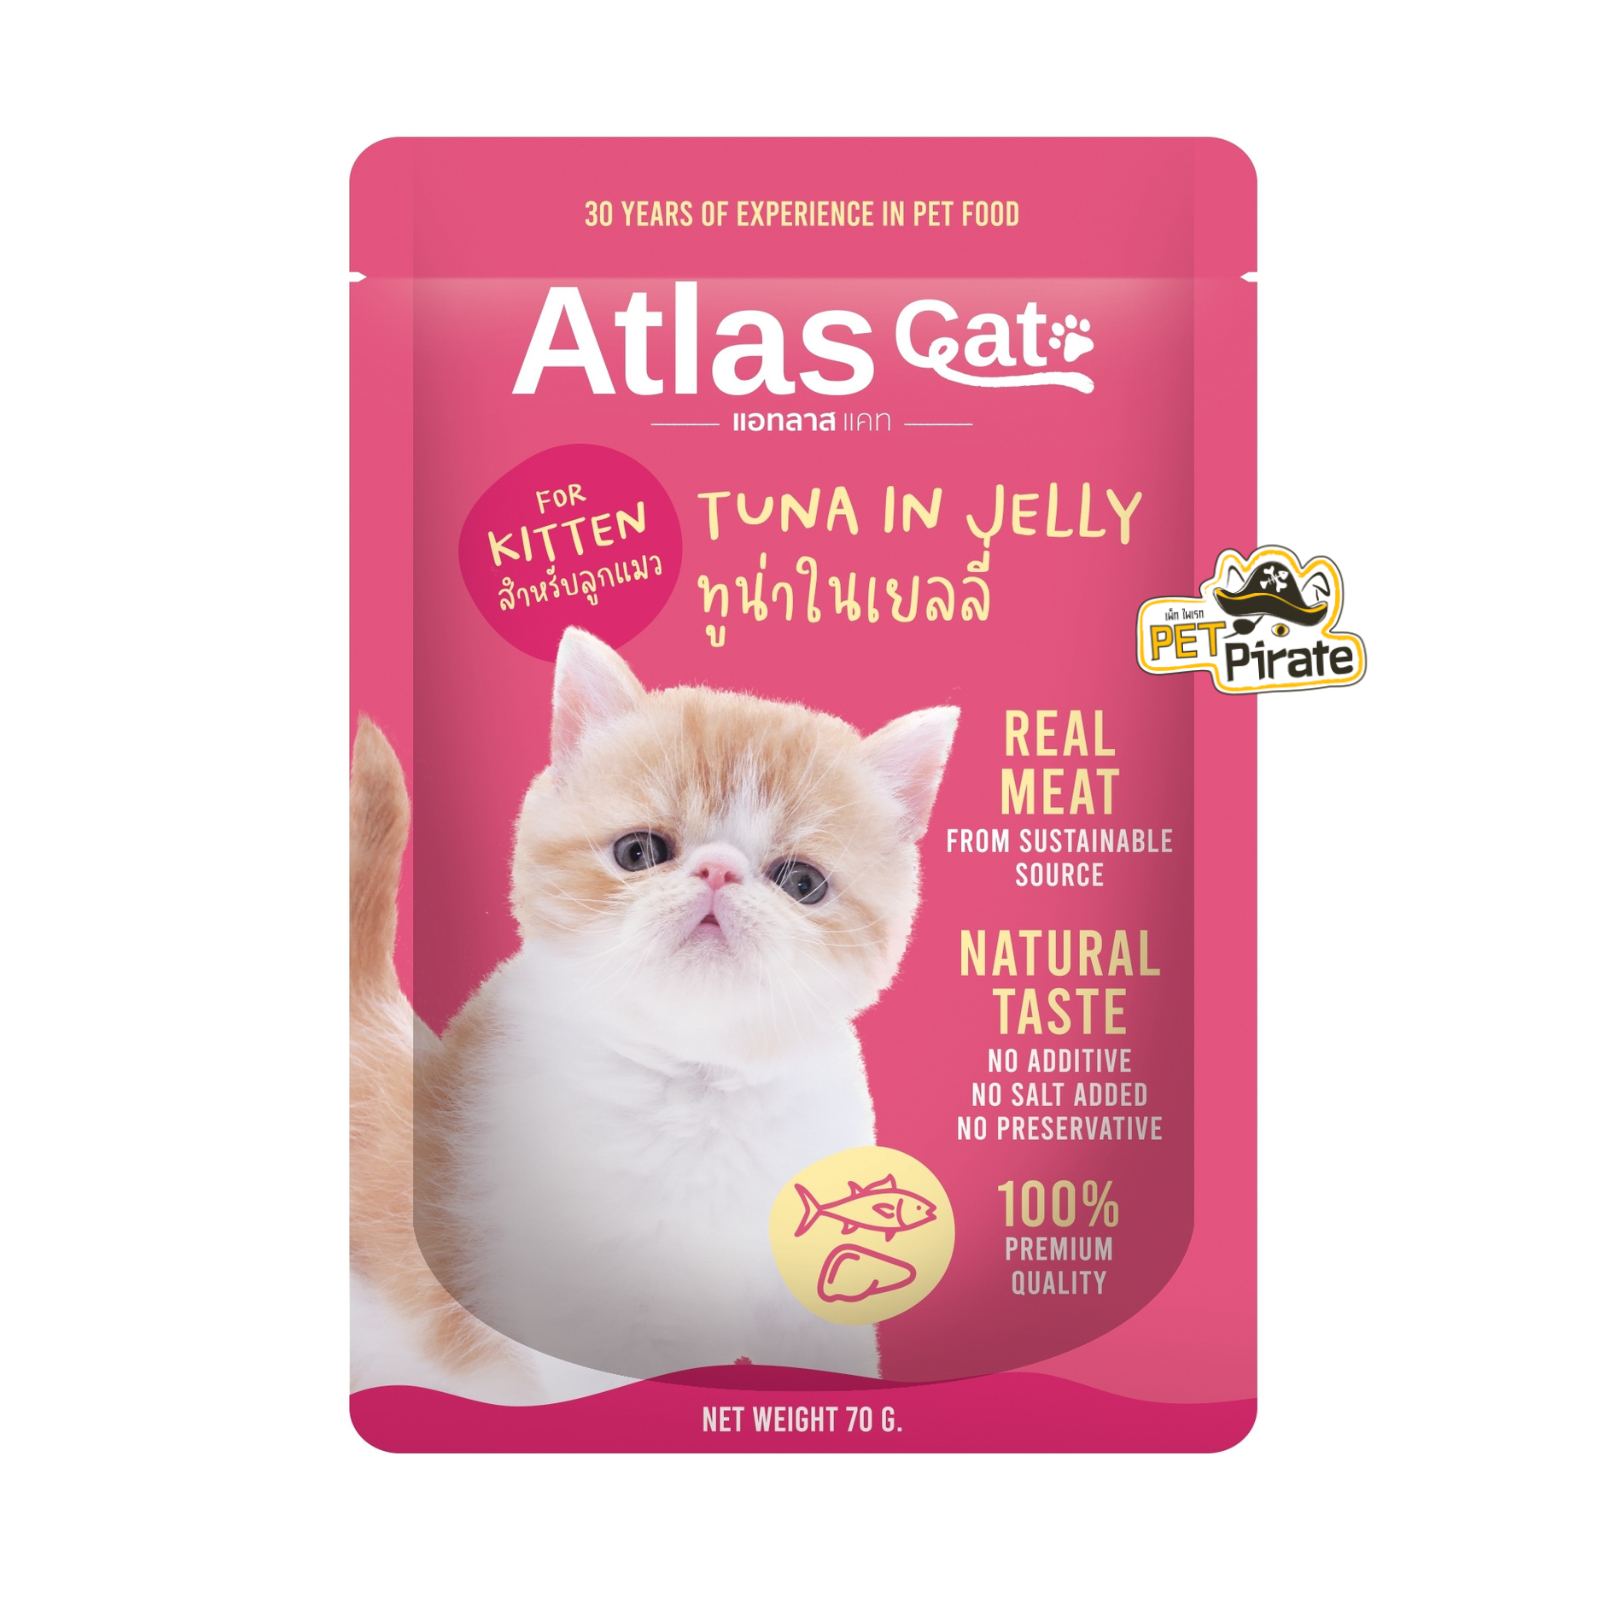 Atlas Cat อาหารเปียกลูกแมว ทูน่าในเยลลี่ [70 กรัม x 5 ซอง] ทำจากเนื้อปลาทูน่าเนื้อดี ลูกแมวอายุ 2 เดือน - 1ปี  70 g